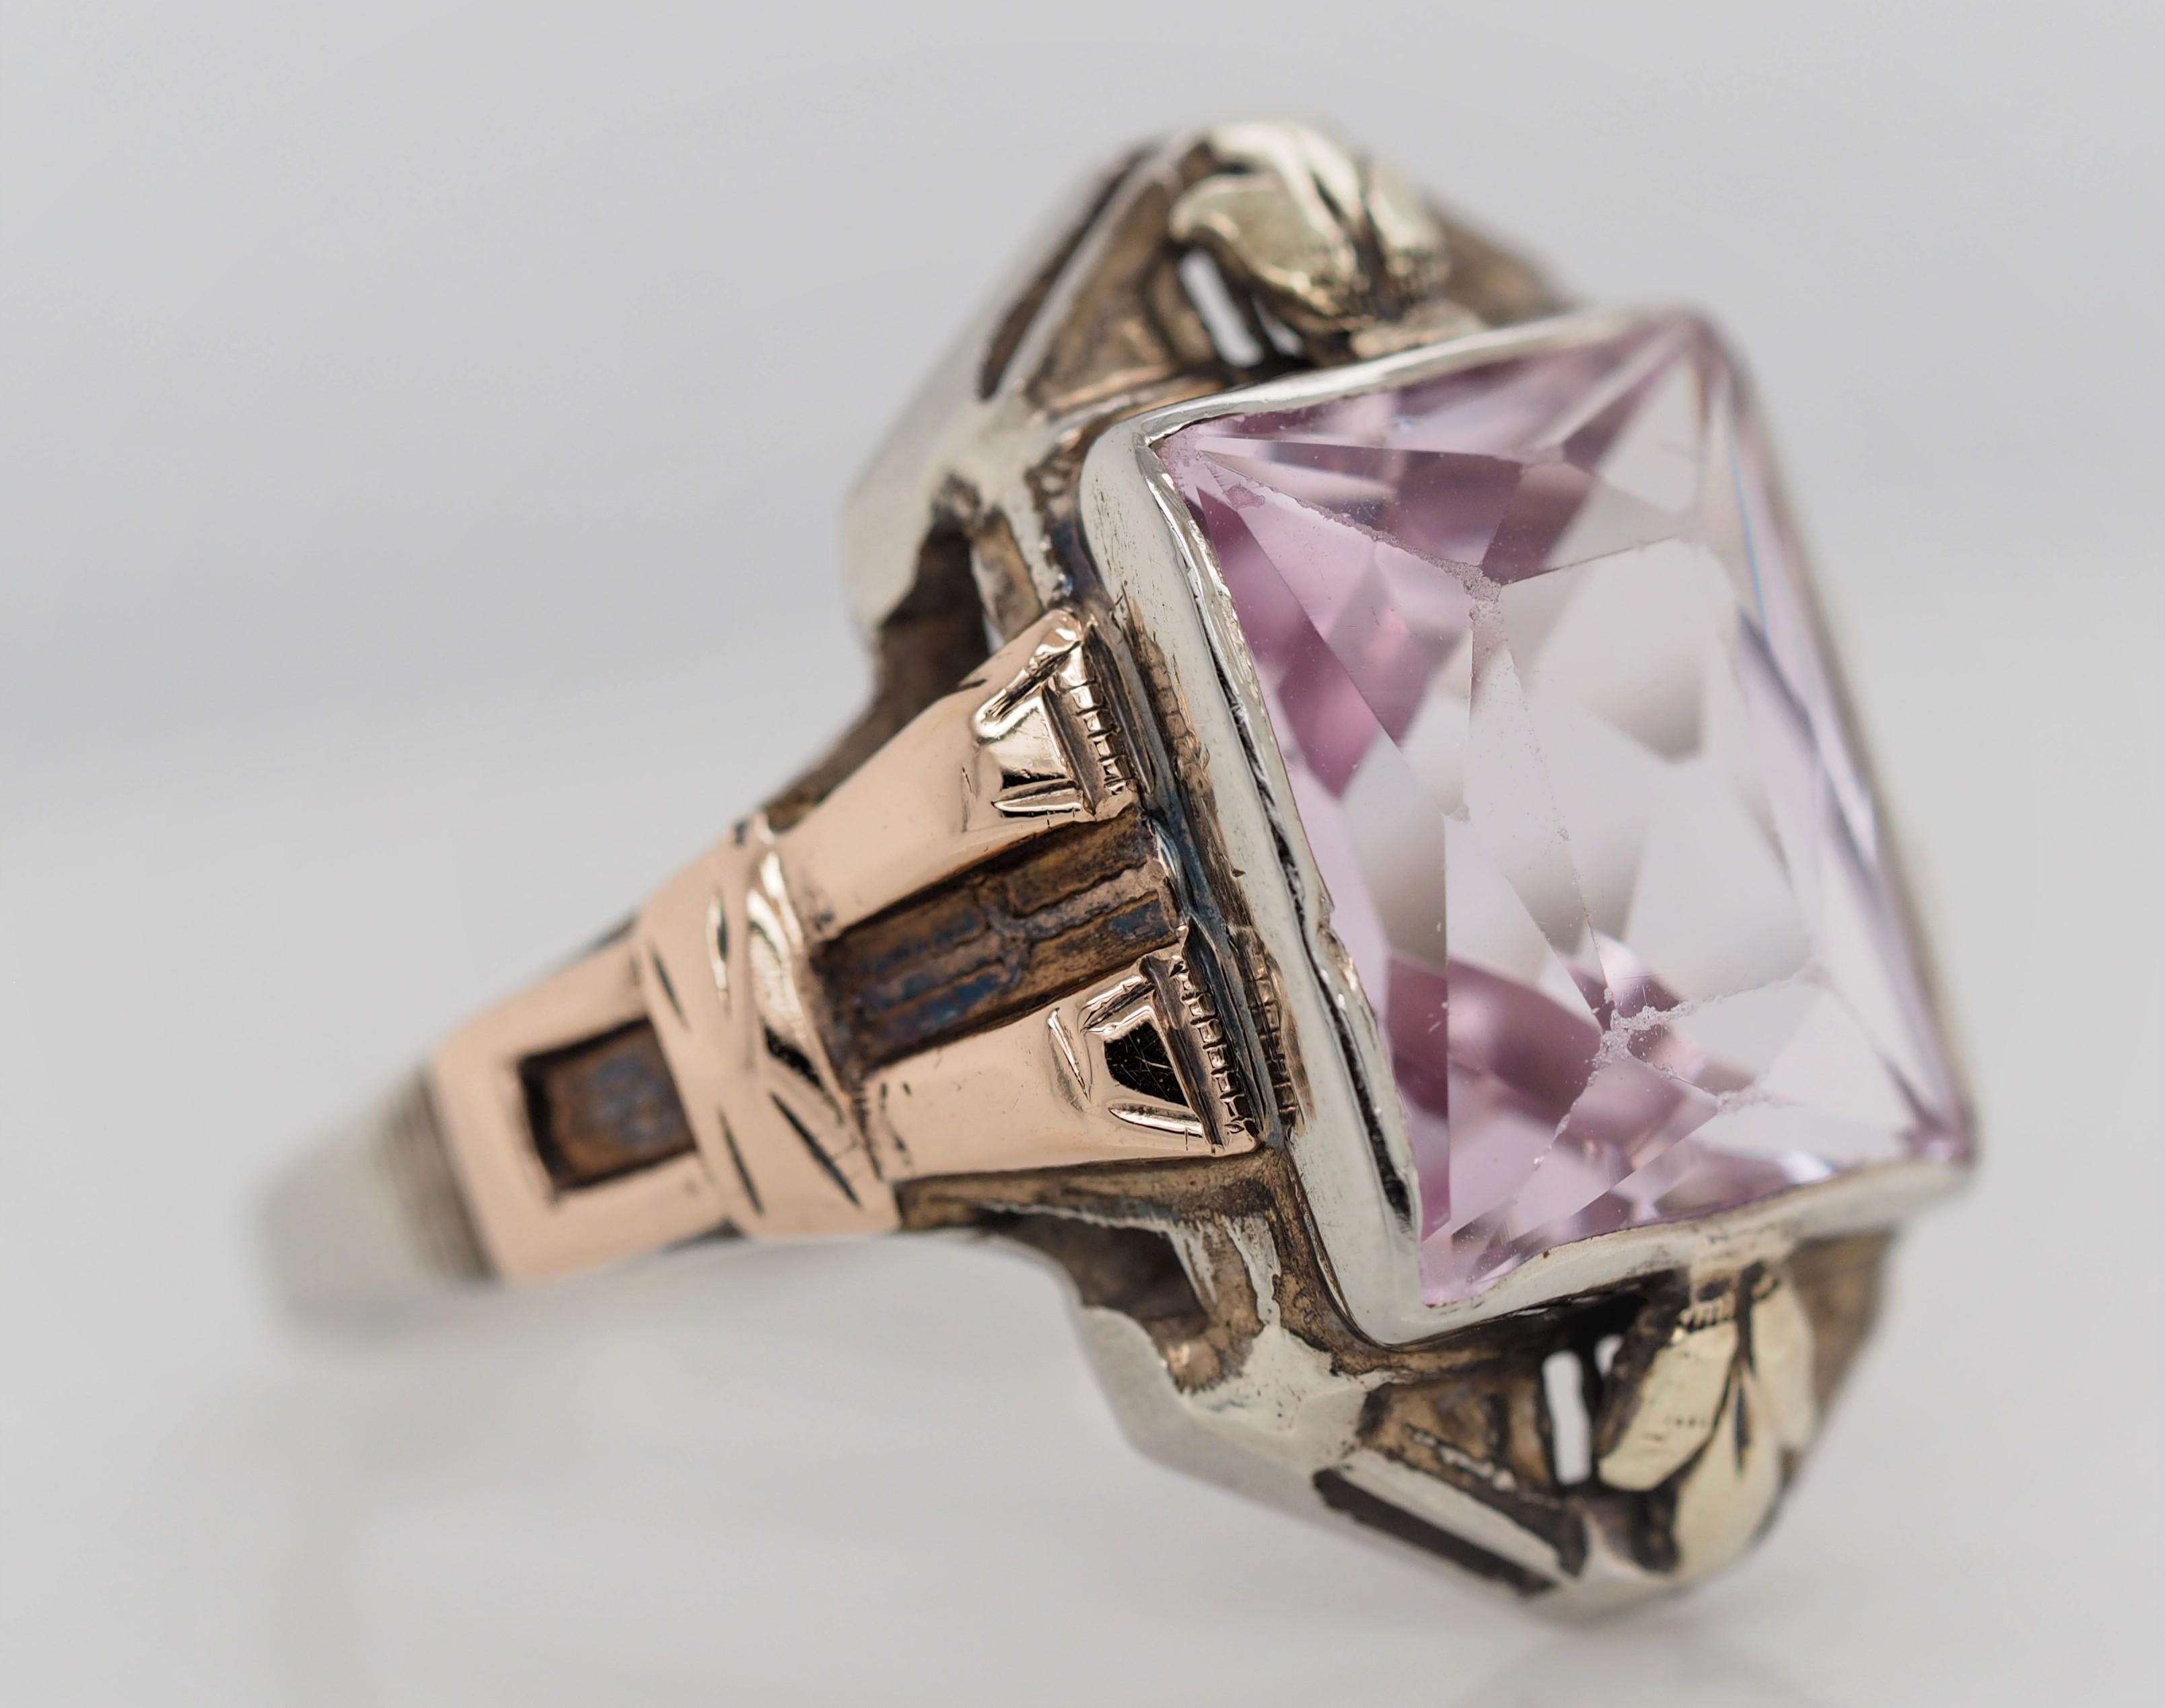 Beschreibung: 
Dieses Stück ist eine echte Art-déco-Schönheit! 
Dieser schöne Ring wäre eine großartige Ergänzung für die Sammlung eines jeden Antiquitätenliebhabers!

Artikel-Details: 
Ringgröße: 6
Metall Typ: 10K Weiß- und Gelbgold
Gewicht: 3